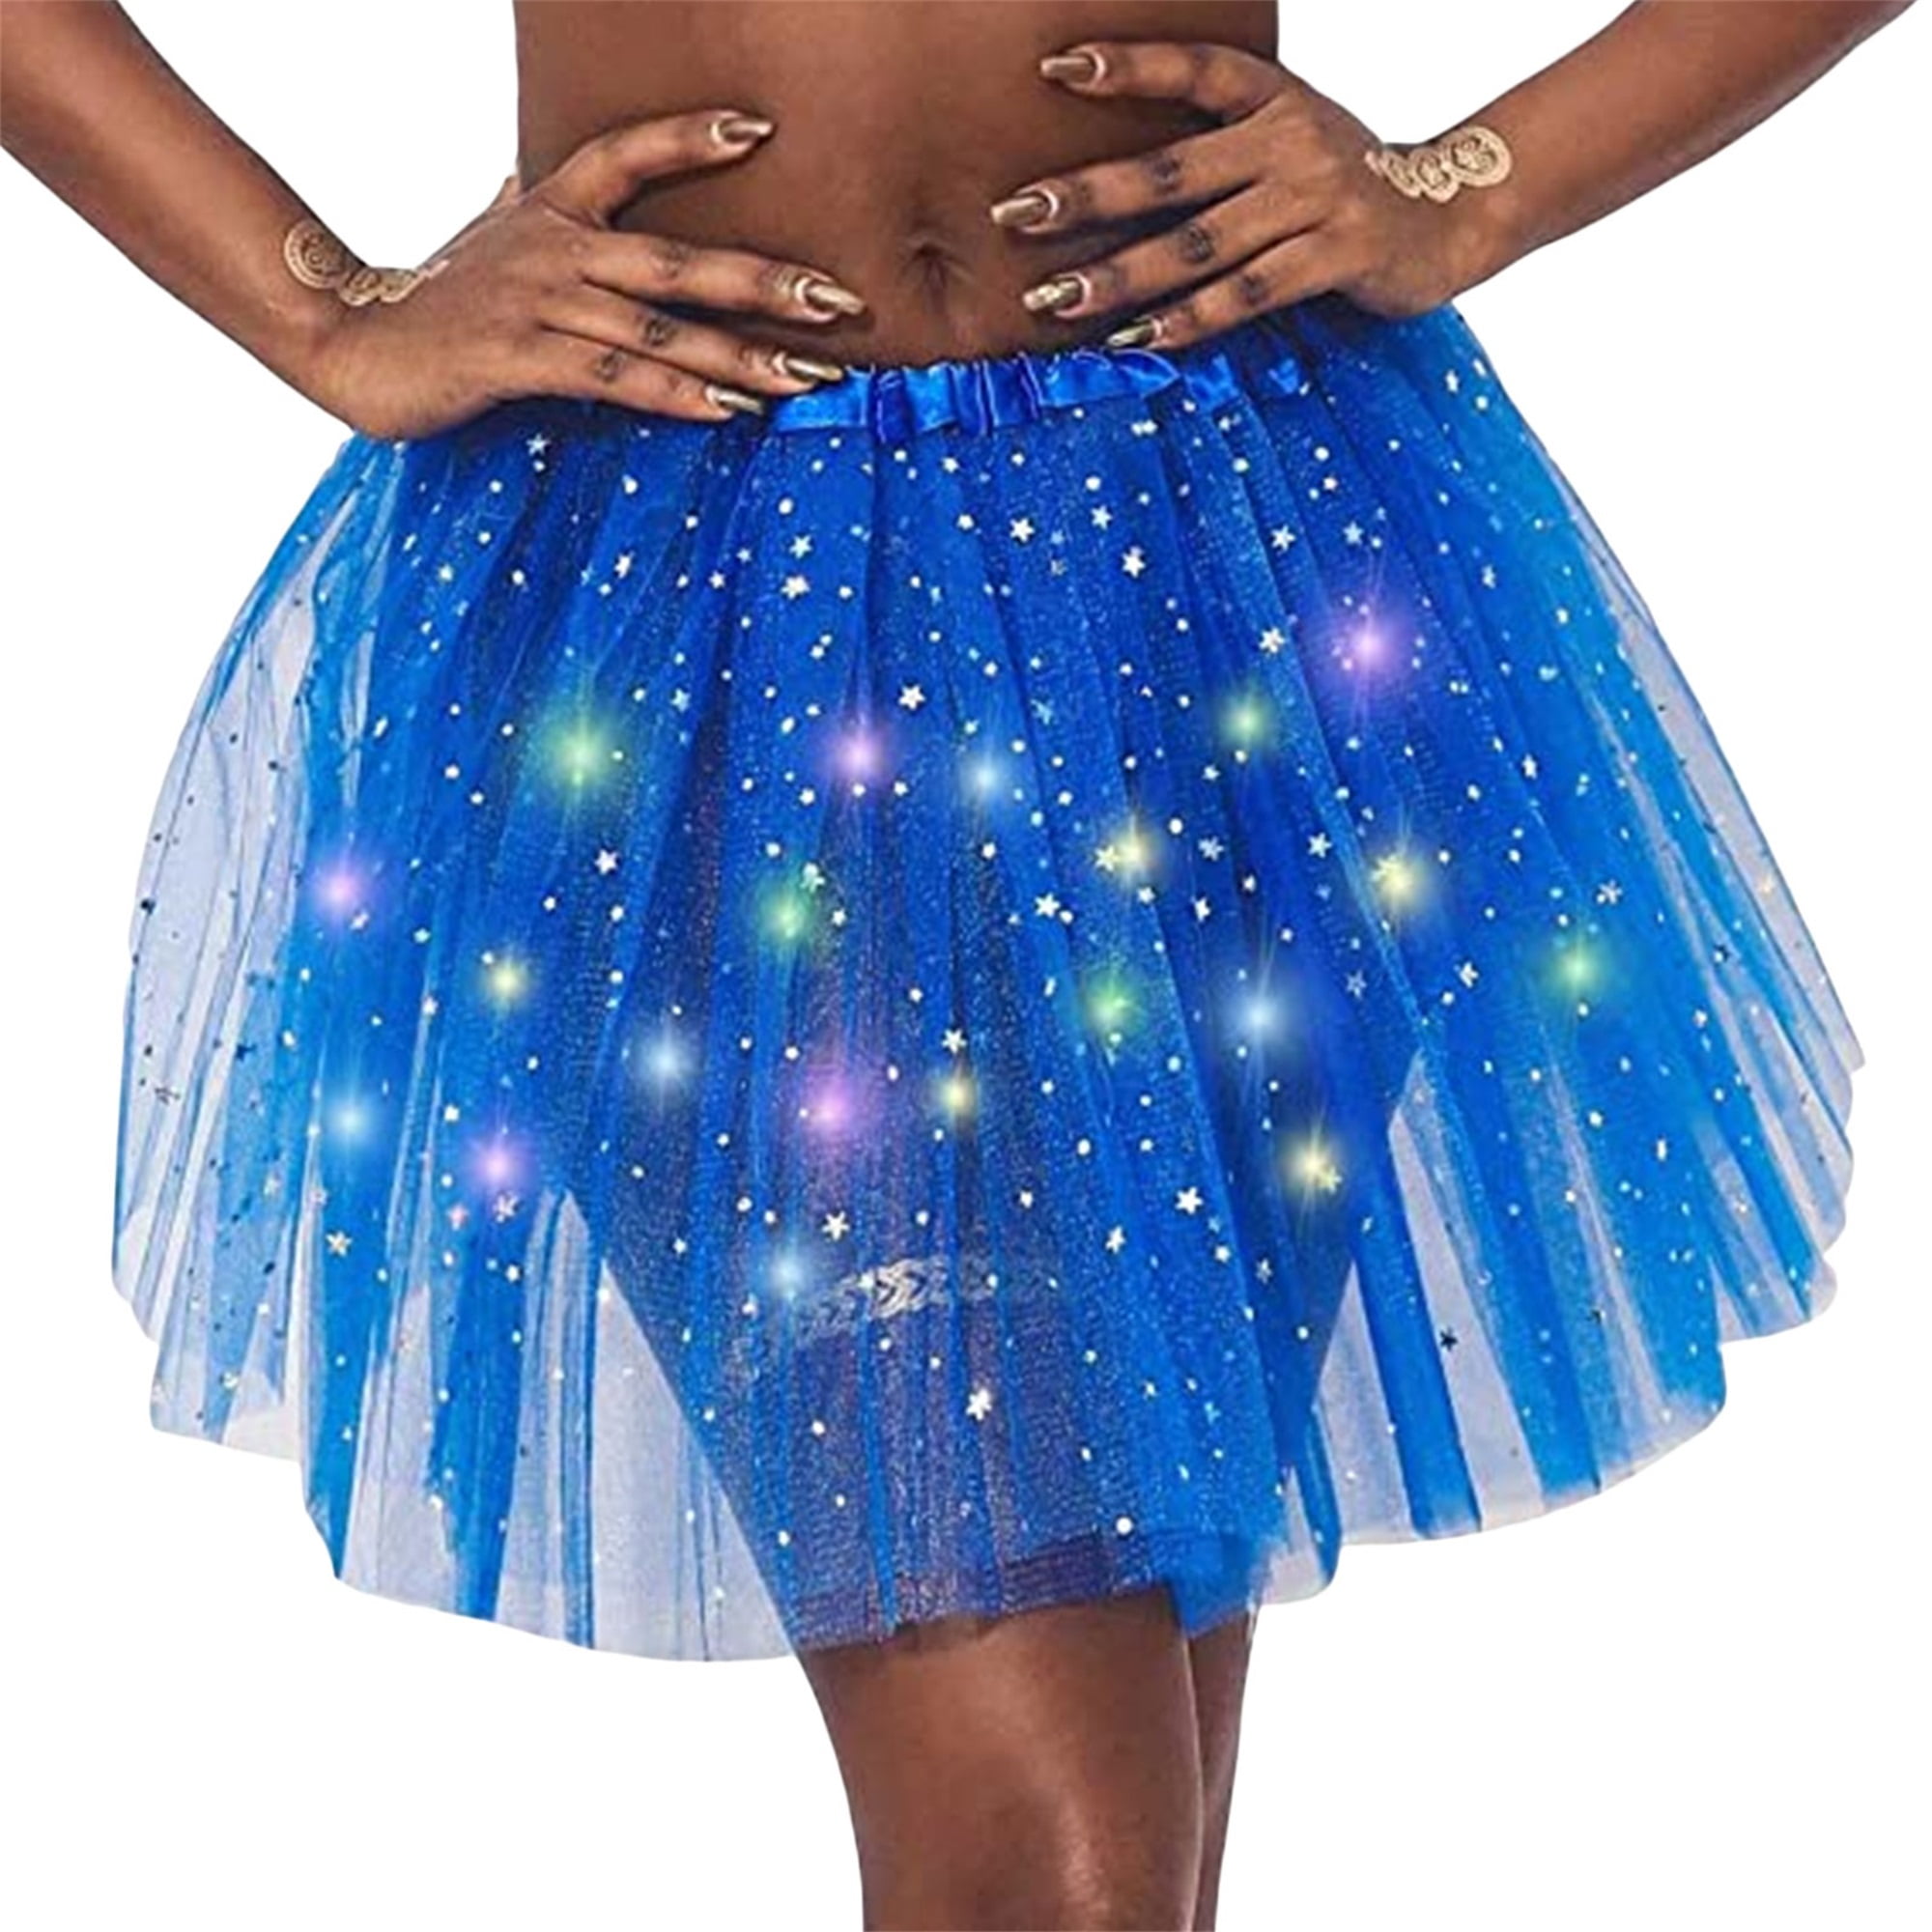 Women's LED Tutu Skirt Light Up Tutus Layered Tulle Ballet Skirt ...